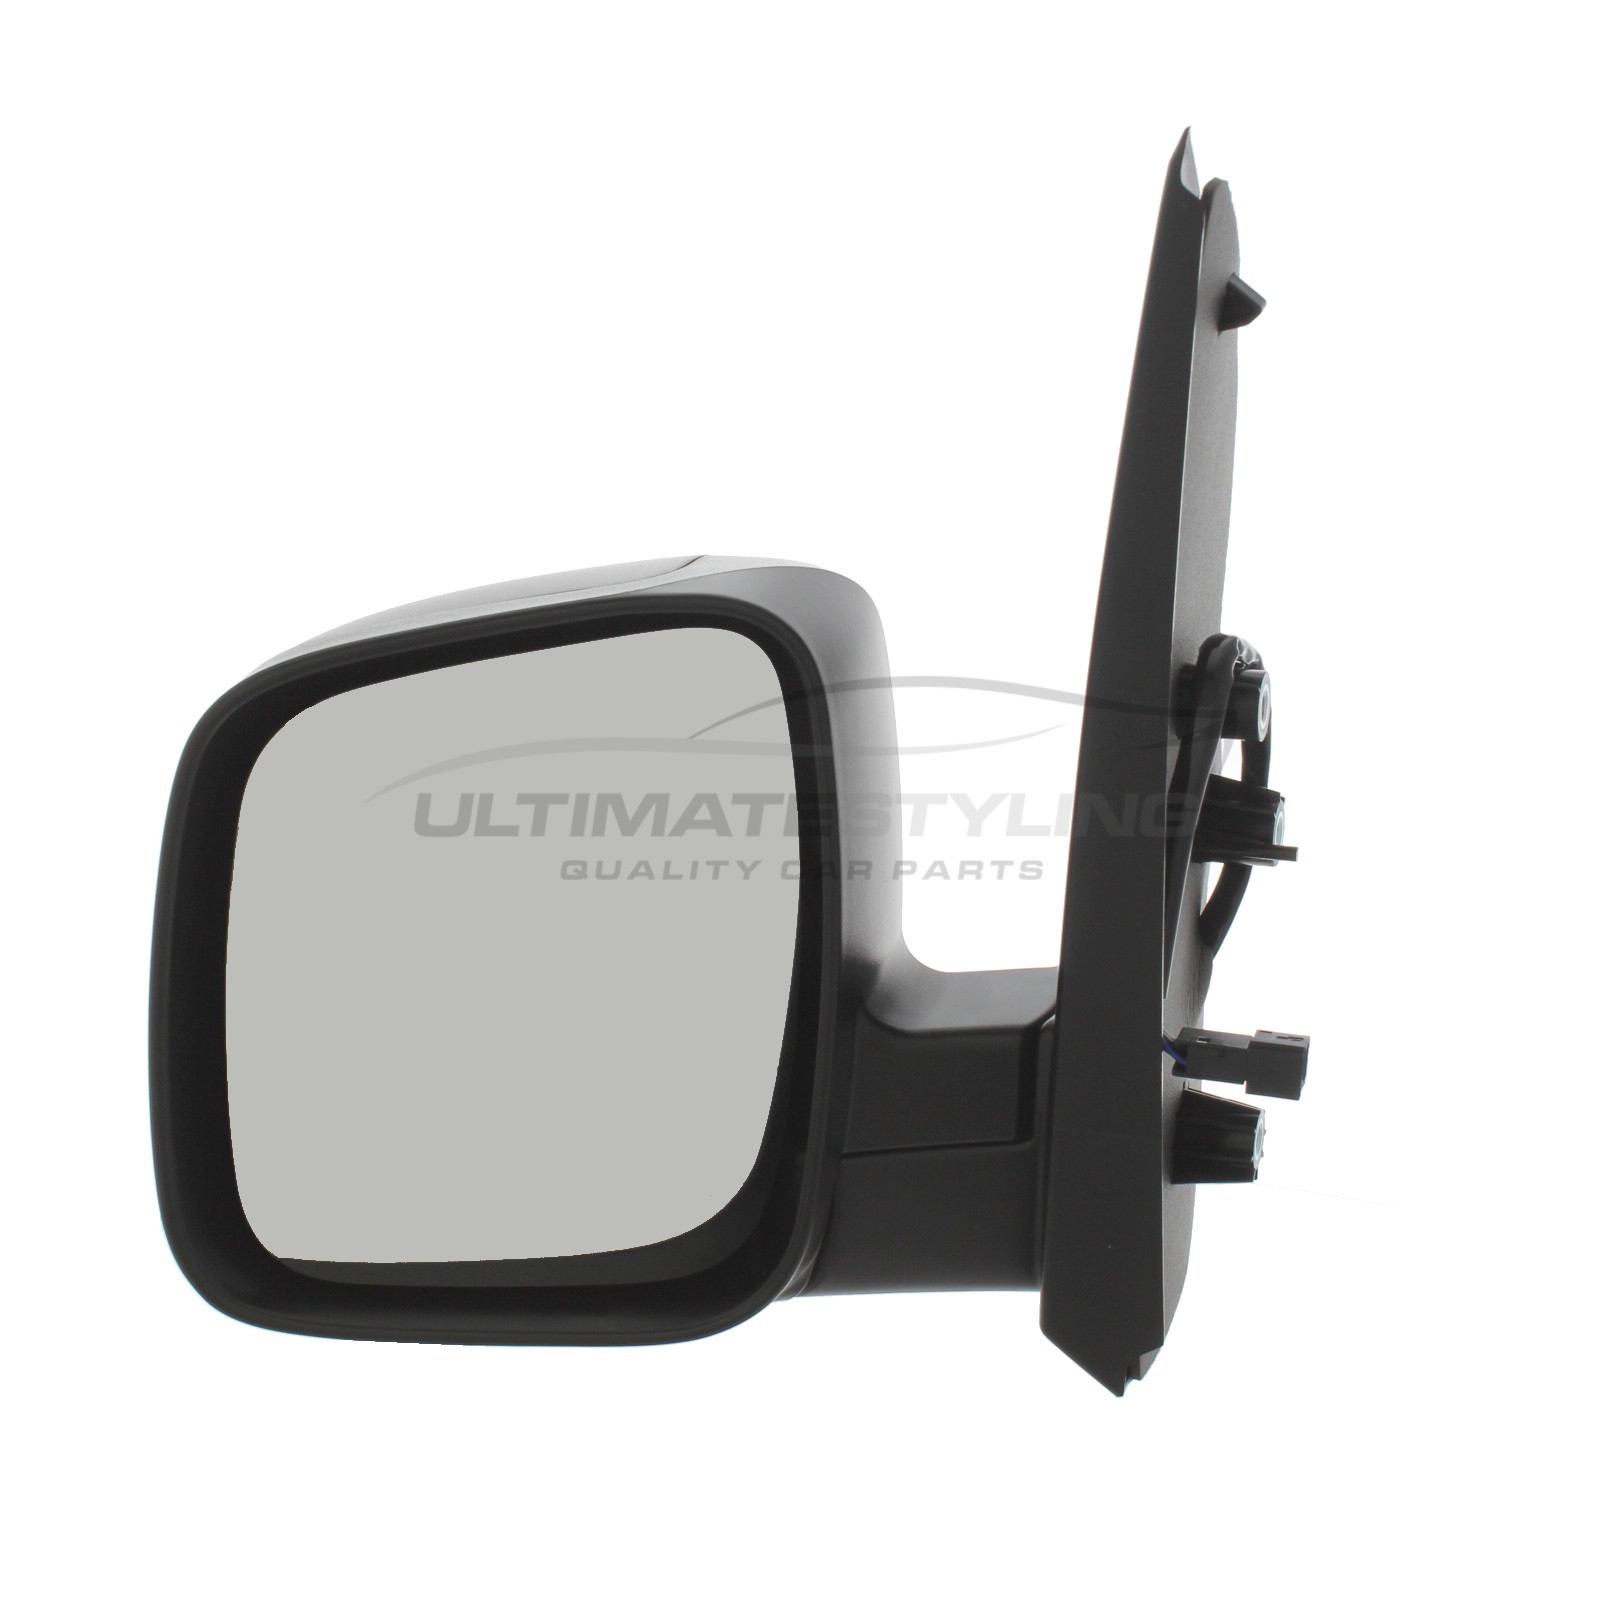 Peugeot Bipper Van 2008 Electric Wing Door Mirror Black Cover Drivers Side